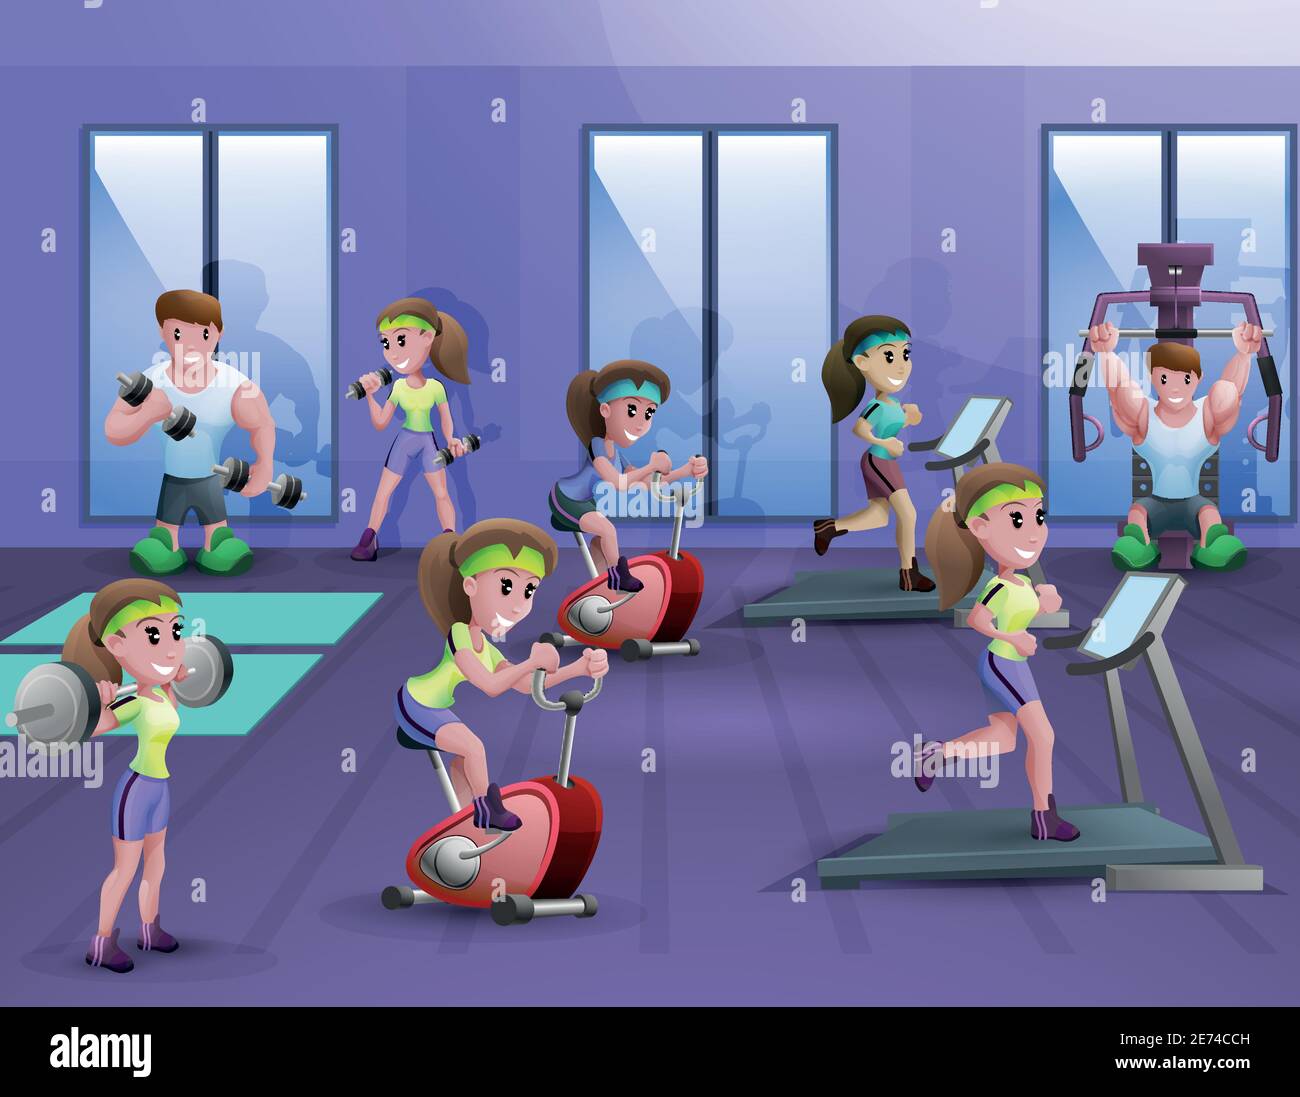 Poster della sala fitness con cui si allenano uomini e donne illustrazione vettoriale cartoon di attrezzature diverse Illustrazione Vettoriale